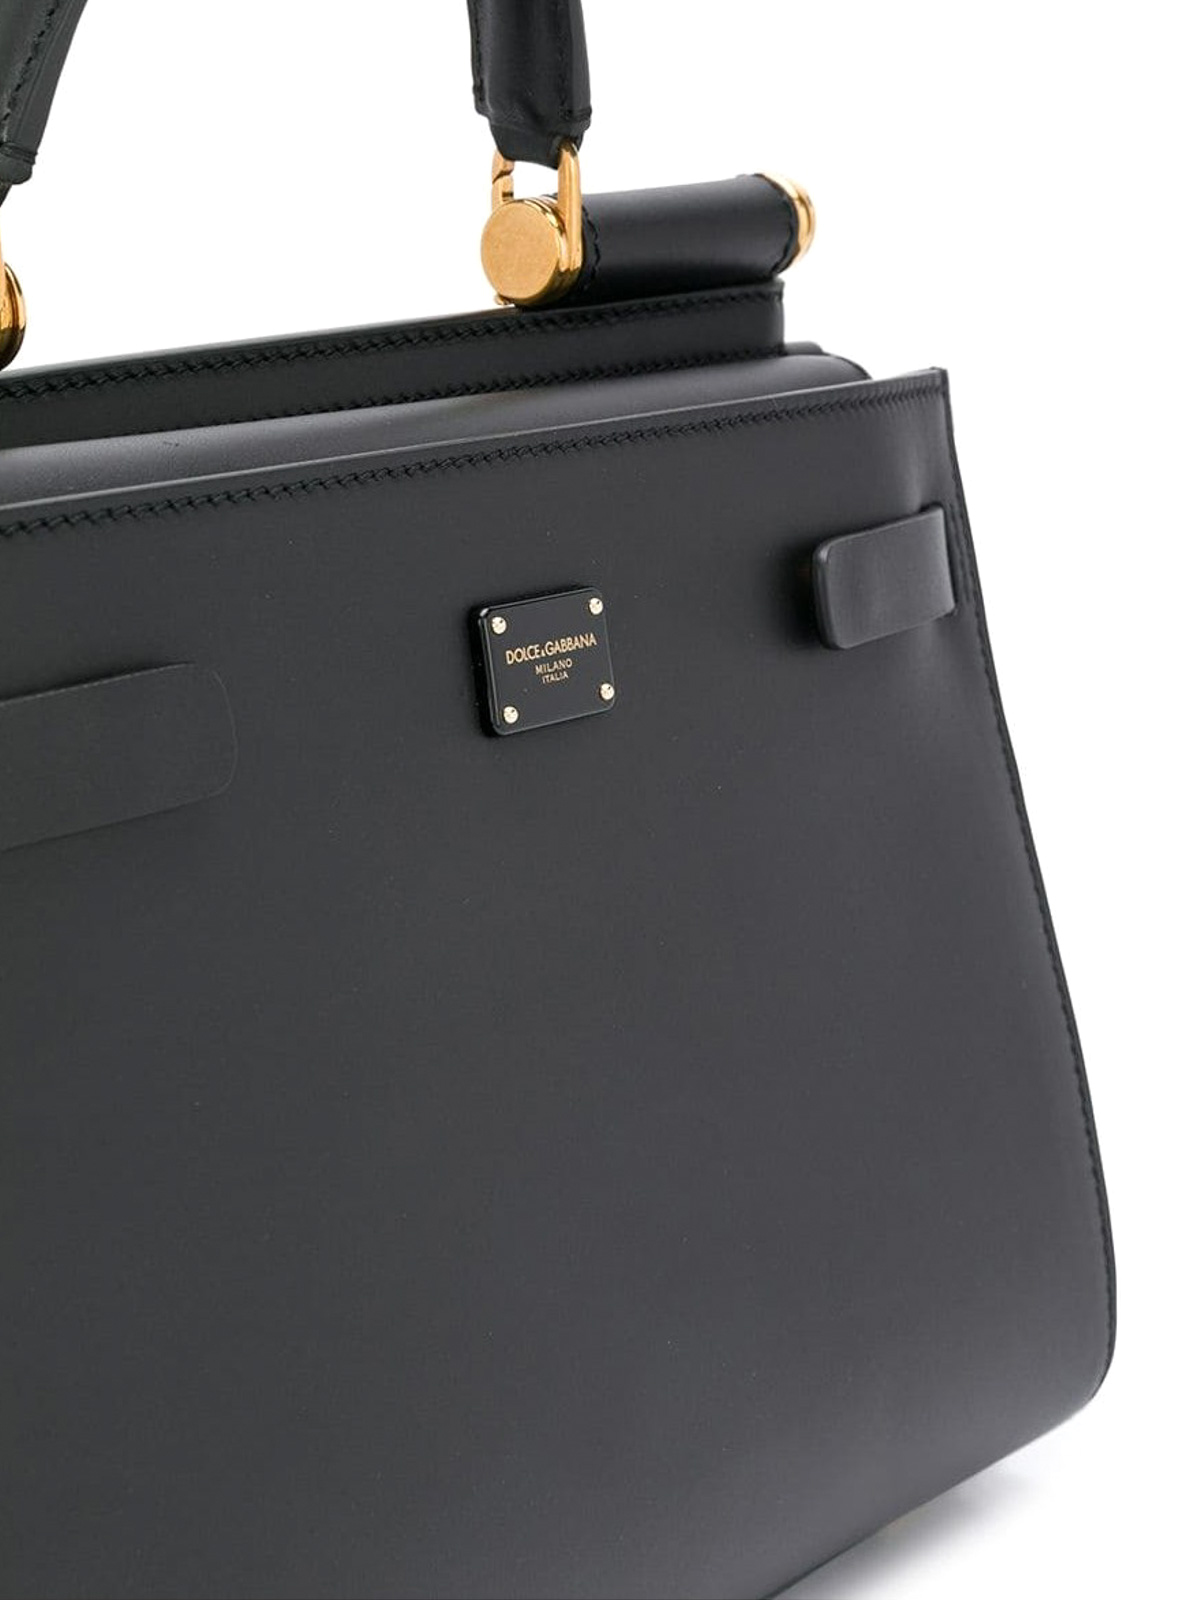 Dolce & Gabbana Sicily 62 Large Tote Bag in Black